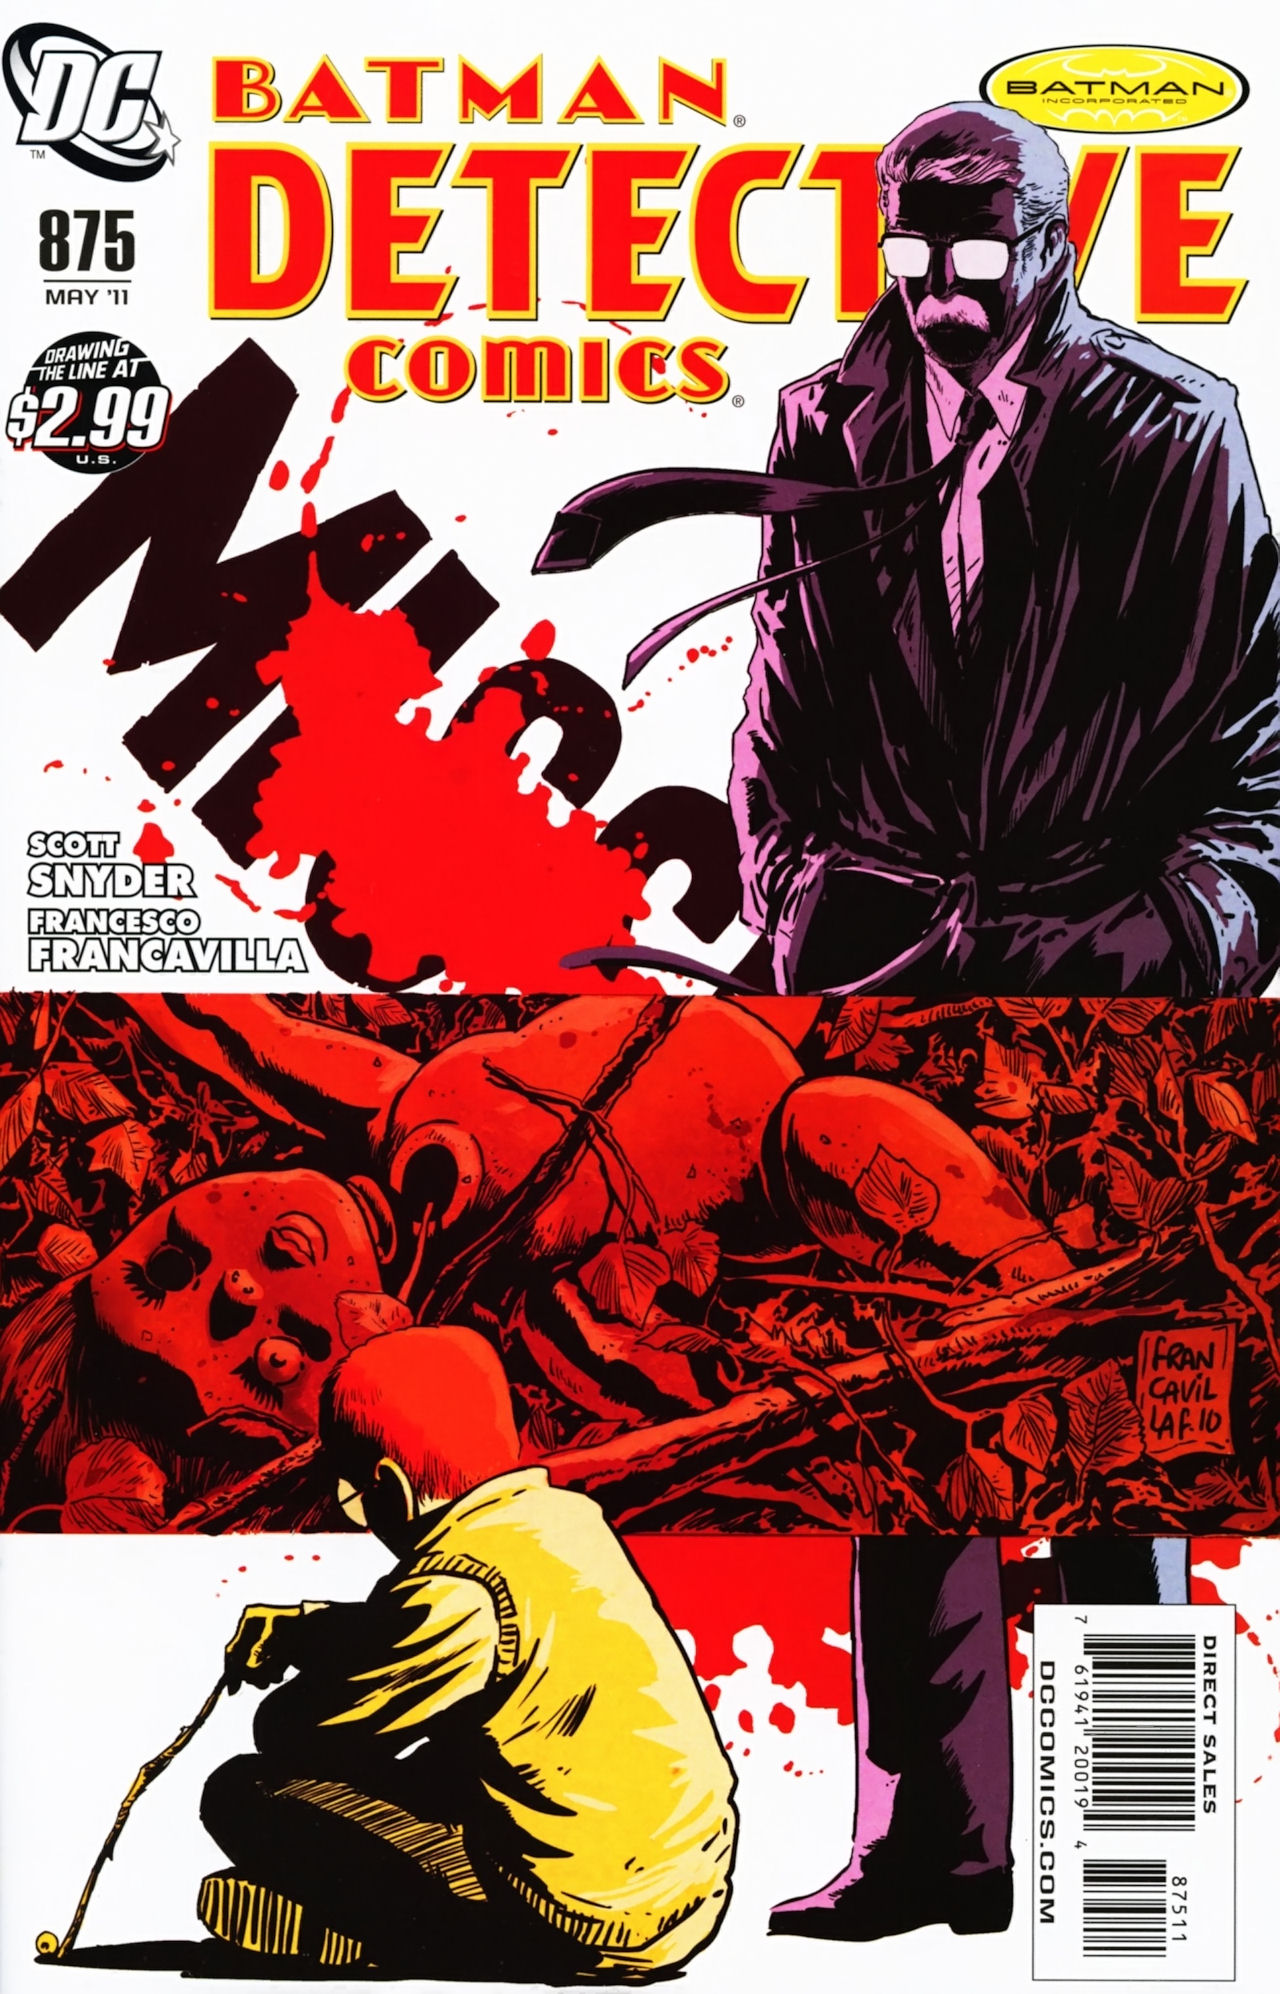 Detective Comics Vol. 1 #875